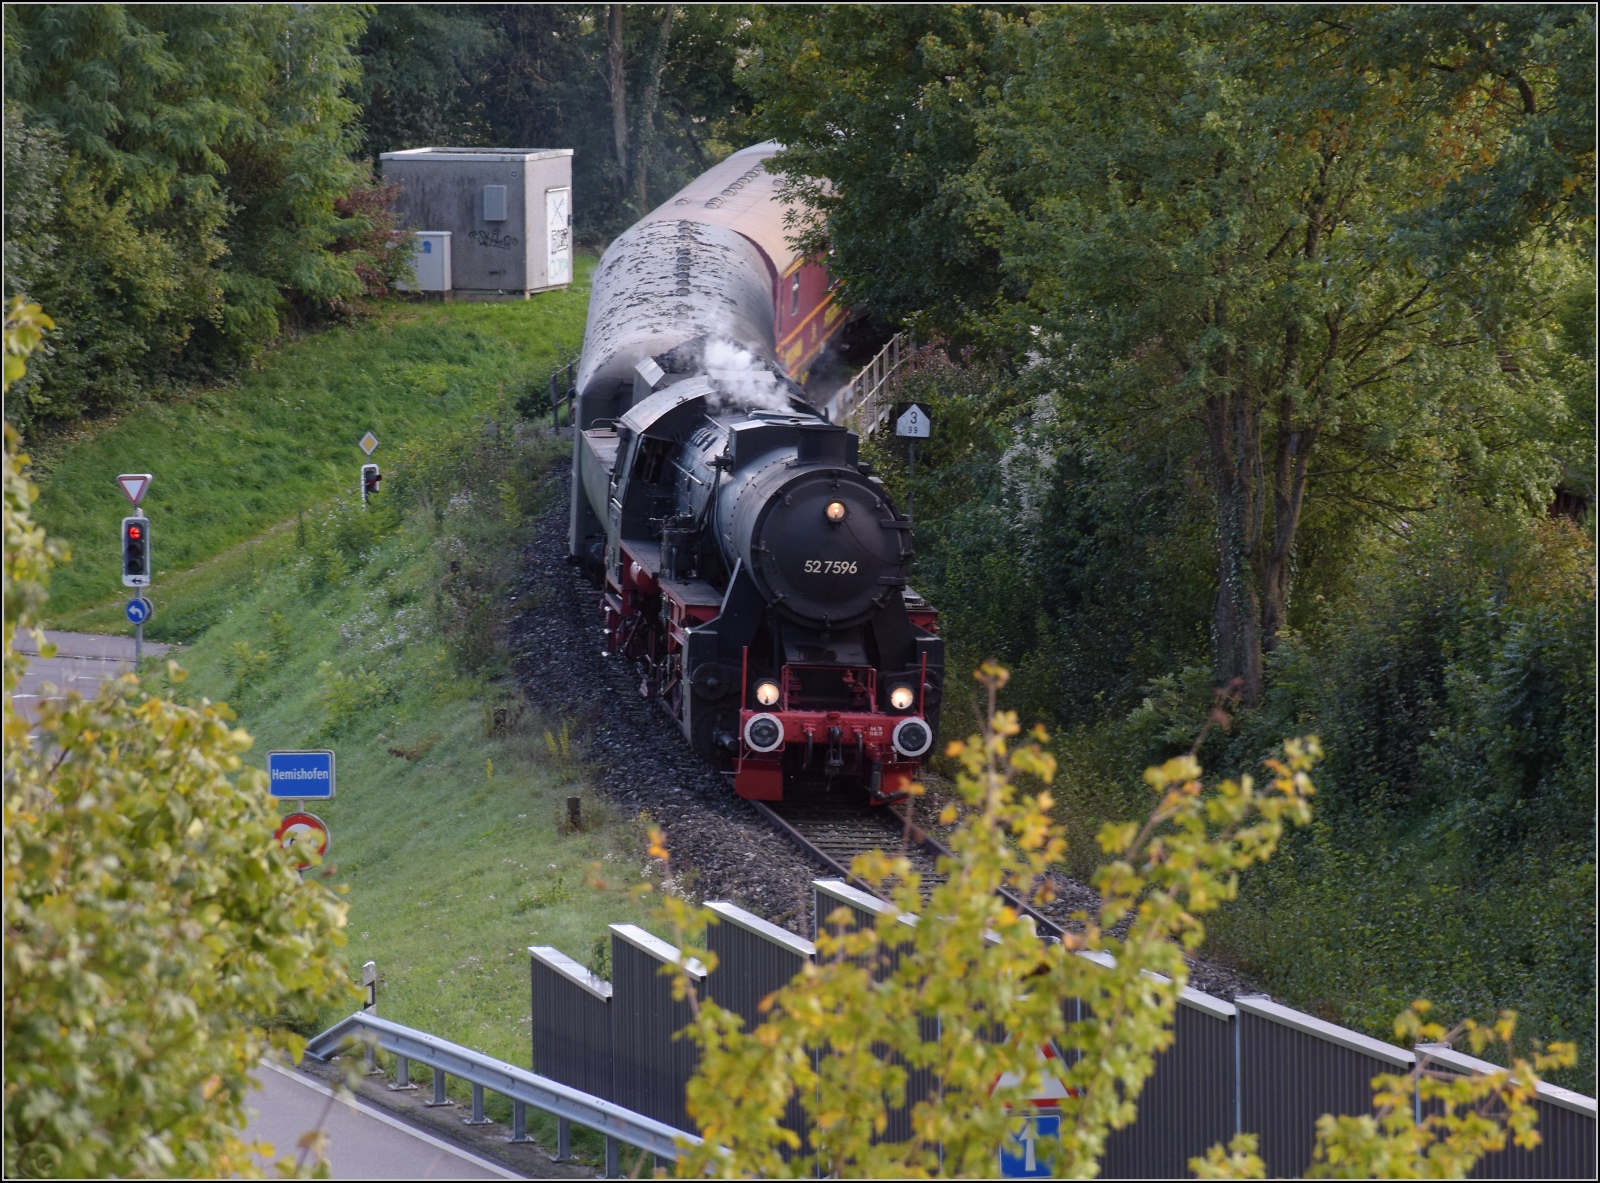 Schienenverkehr am Schienerberg. 

52 7596 mit ihrem EFZ-Sonderzug für die SEHR&RS hat gerade die Rheinbrücke von Hemishofen überquert und erreicht gleich den dortigen Bahnhof. Oktober 2022.